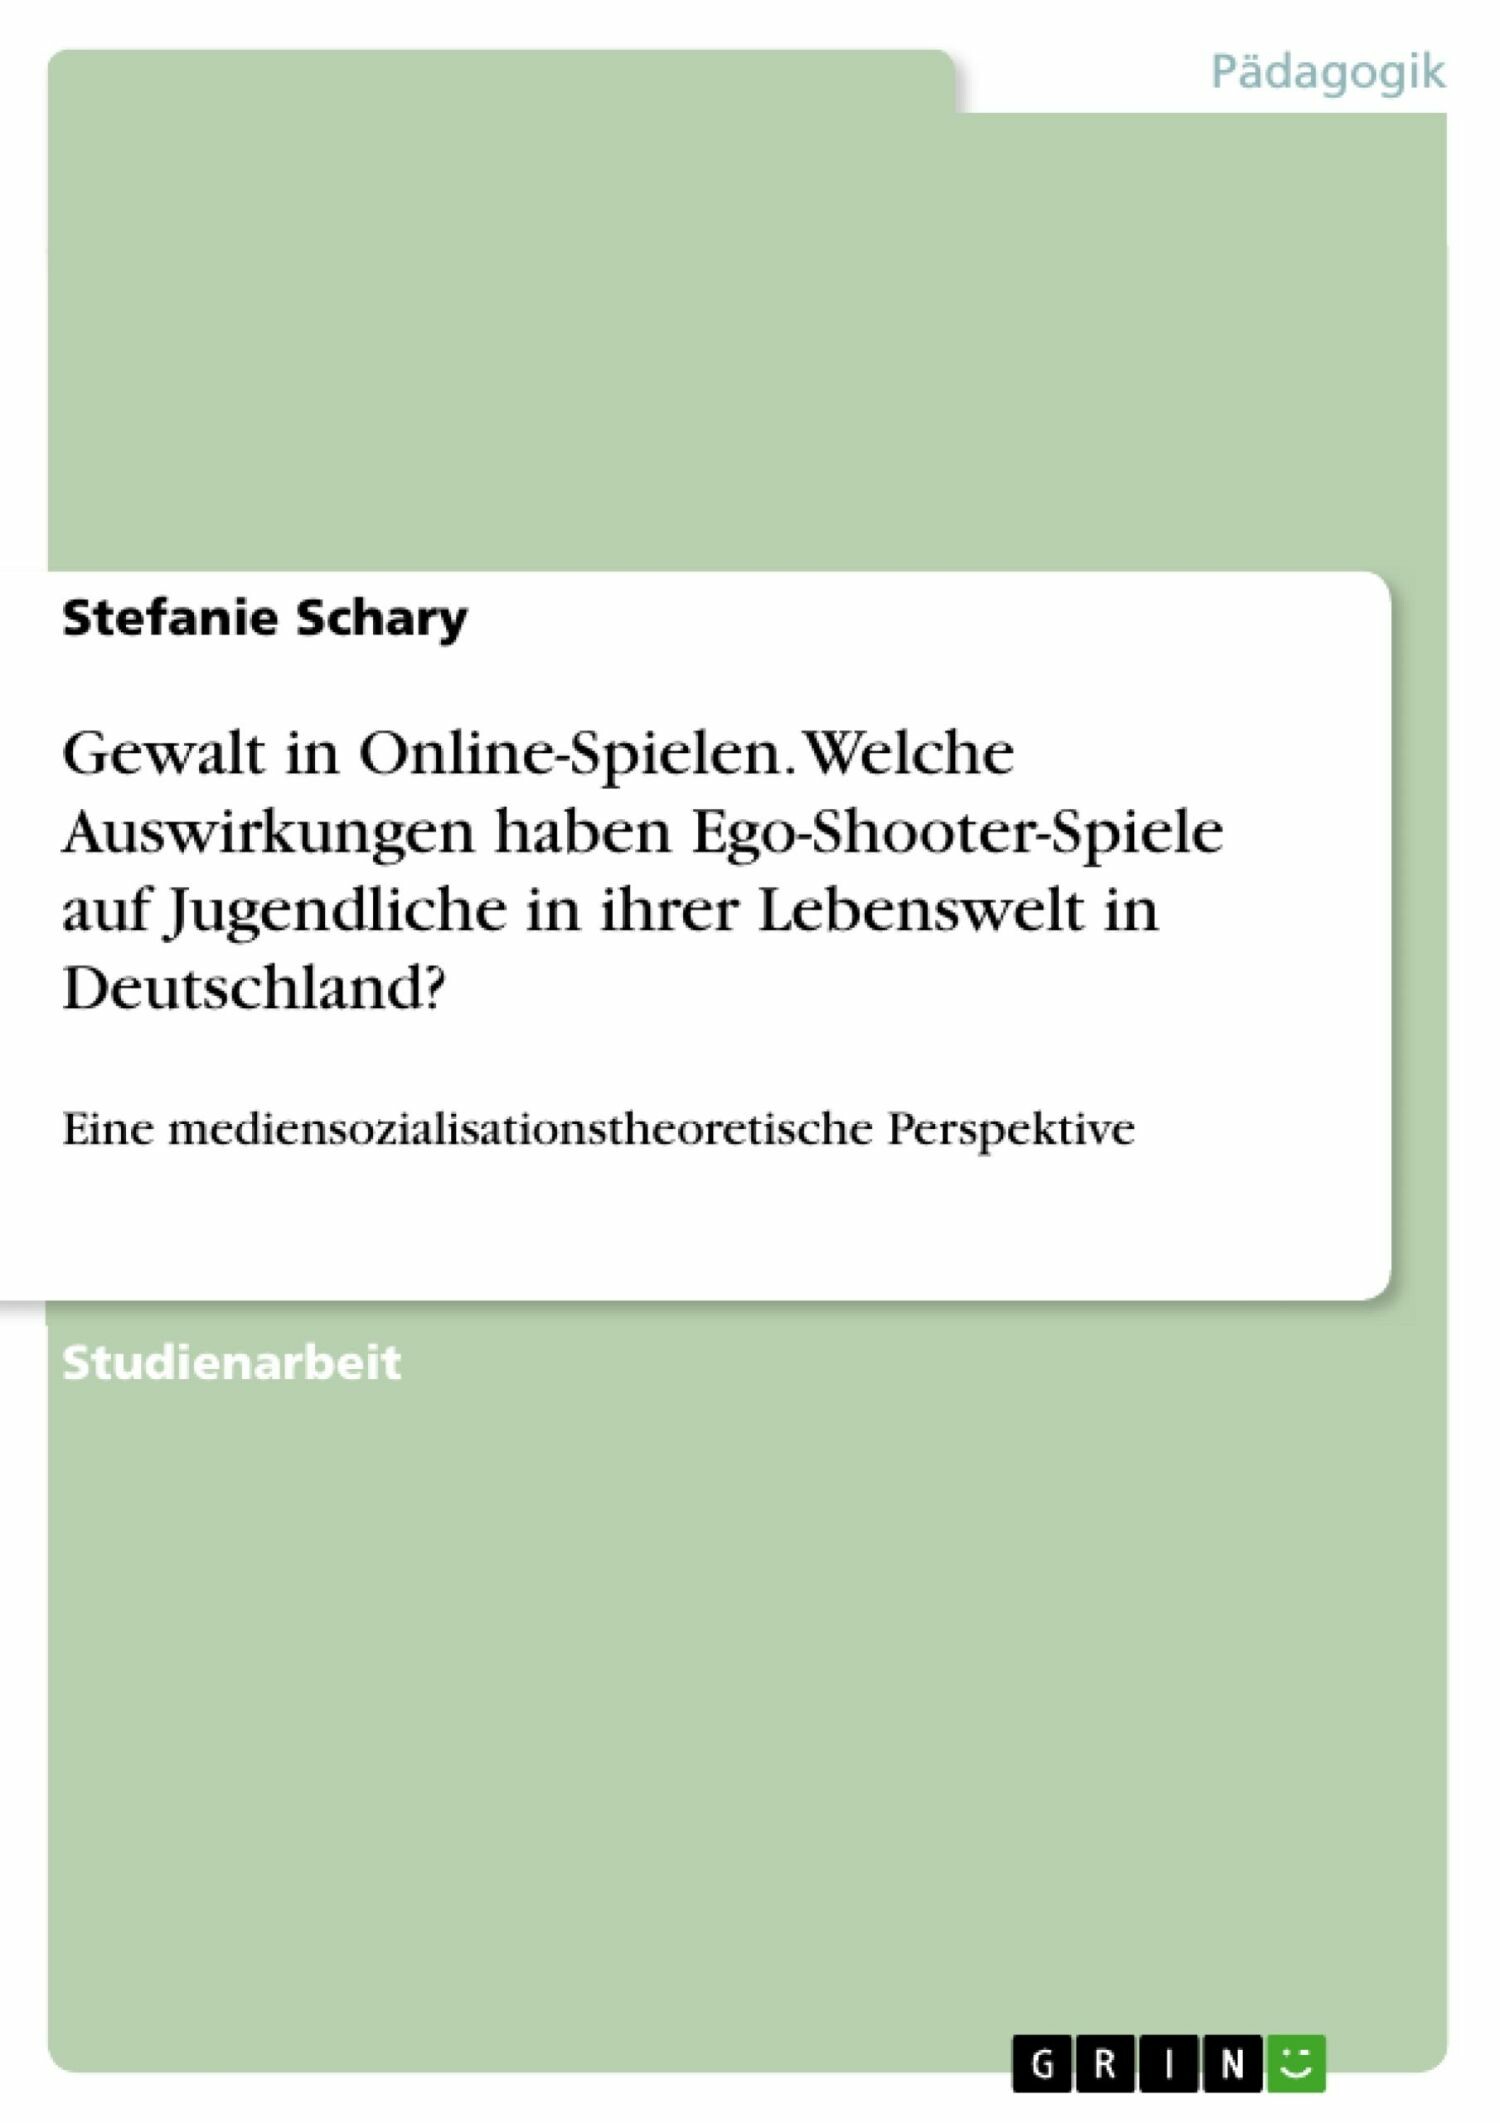 Gewalt in Online-Spielen. Welche Auswirkungen haben Ego-Shooter-Spiele auf Jugendliche in ihrer Lebenswelt in Deutschland?